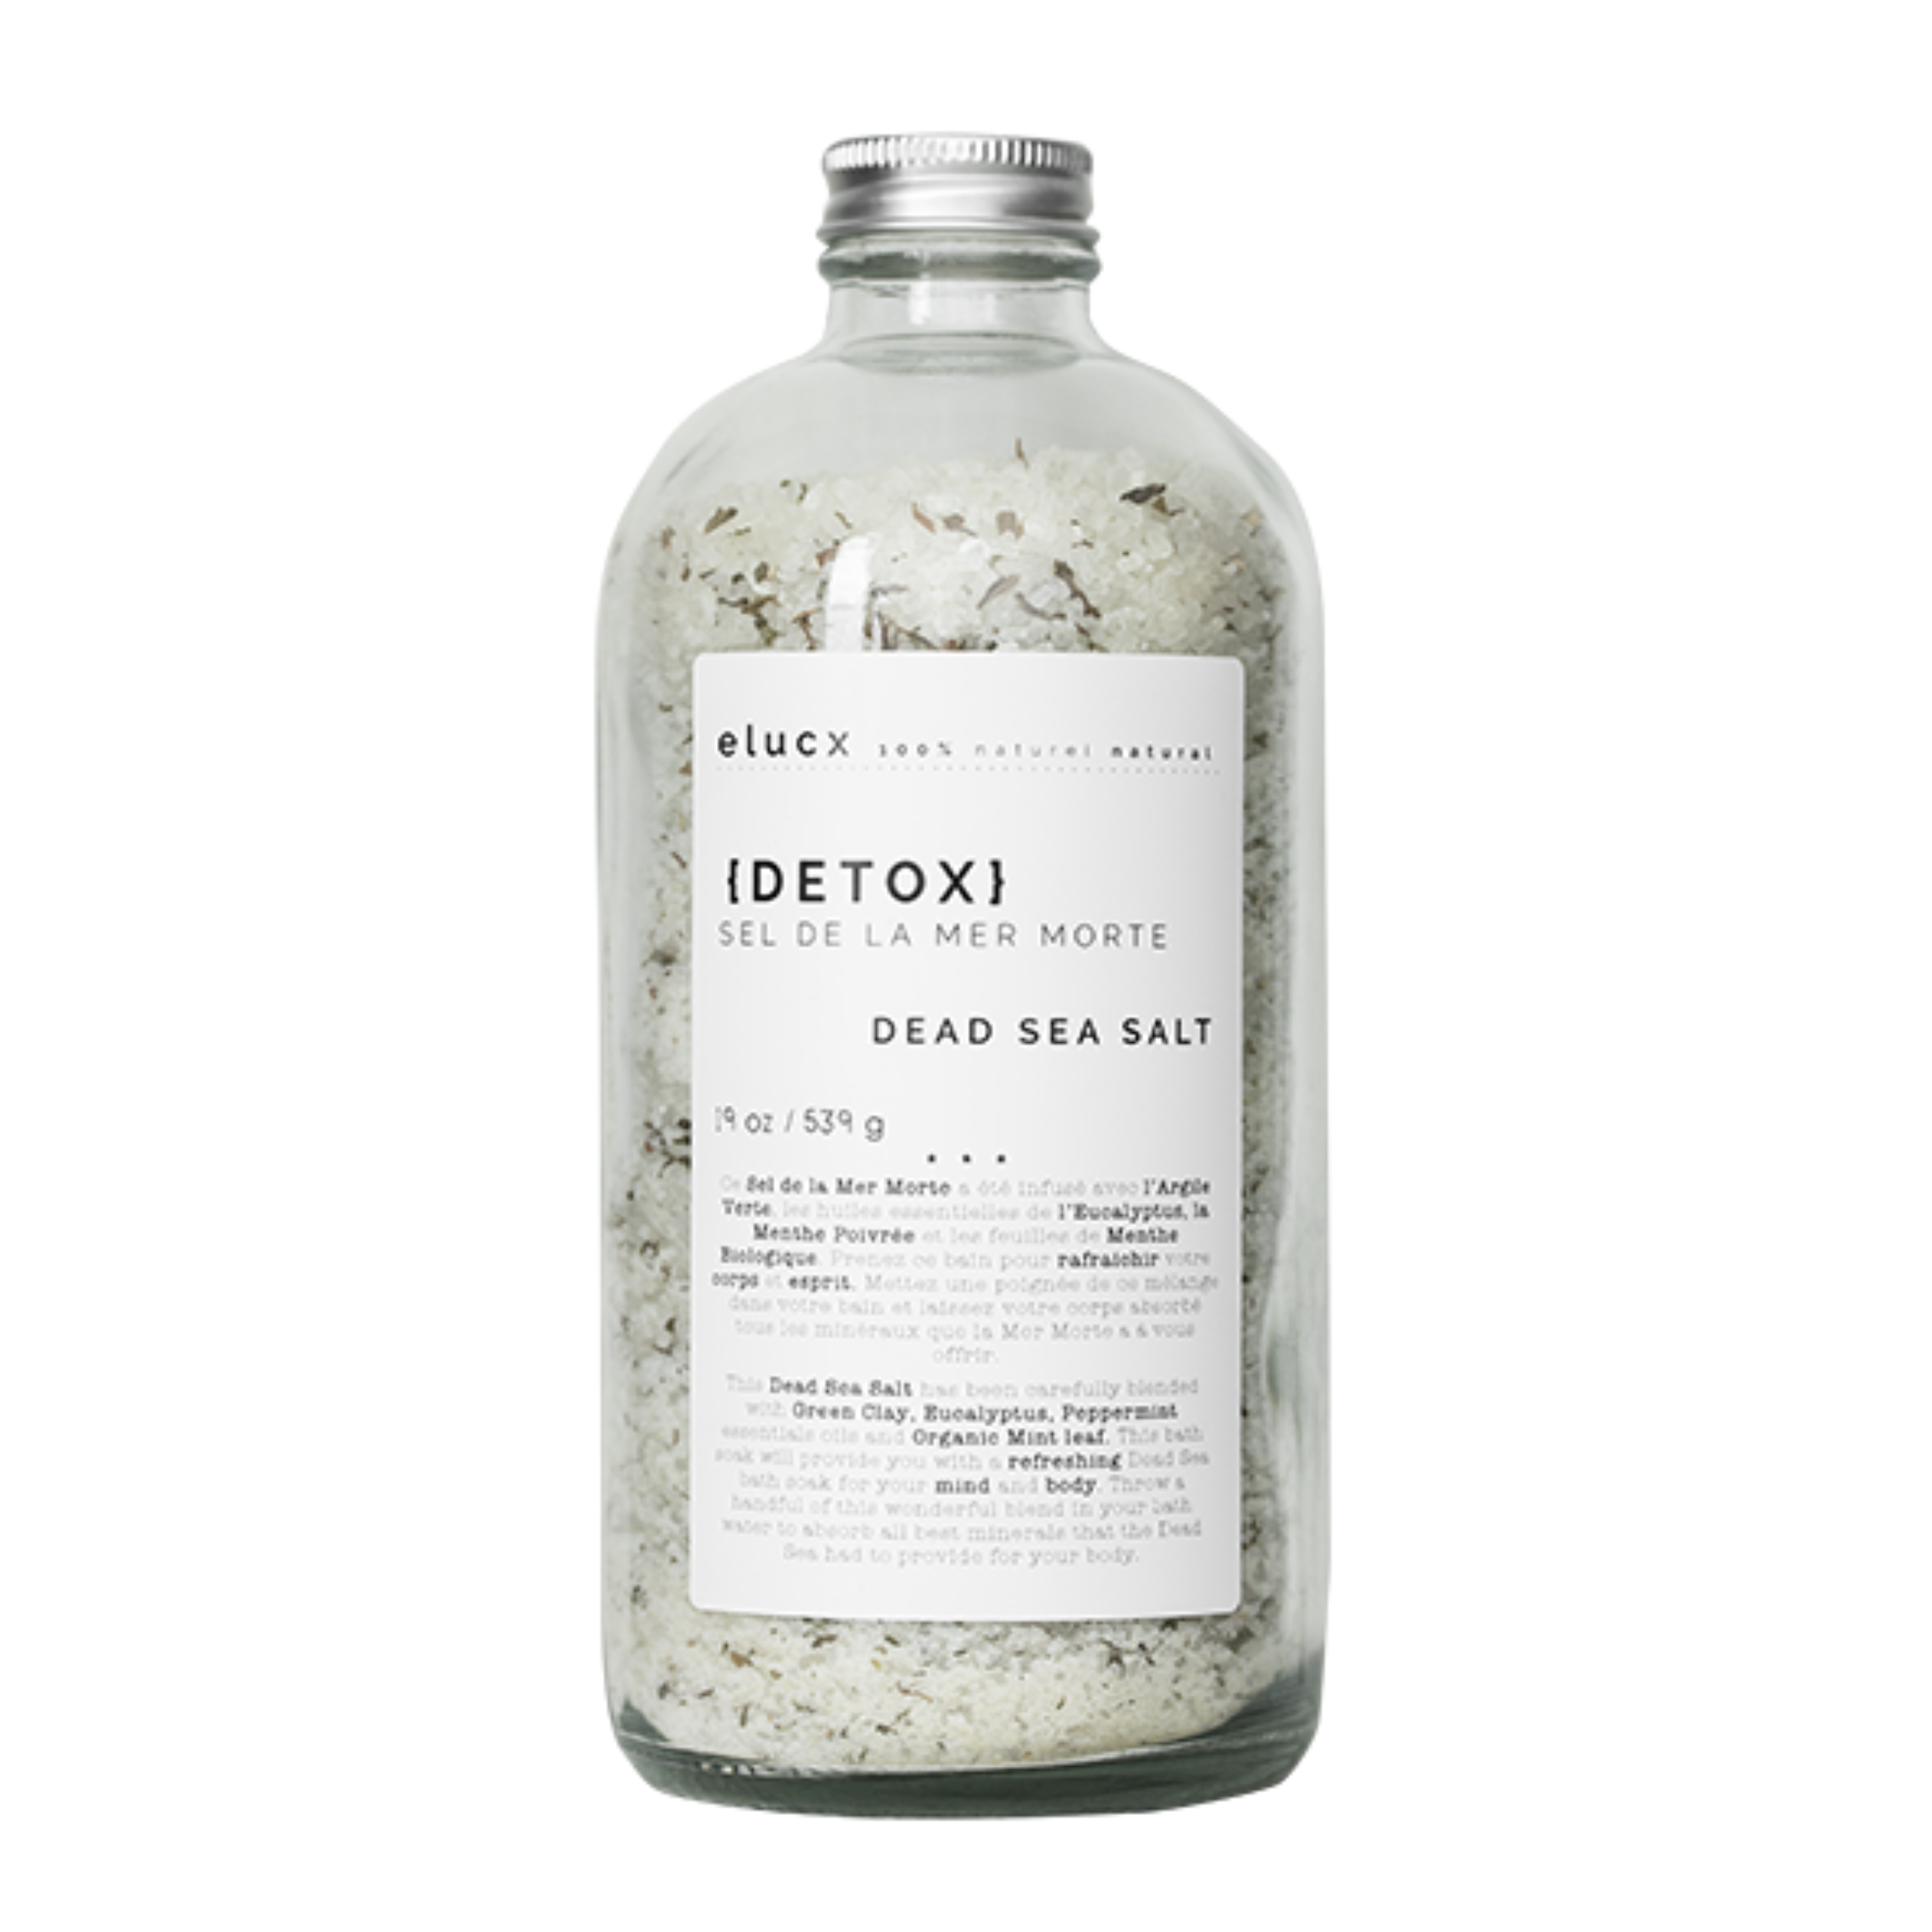 Dead Sea Salt - Detox